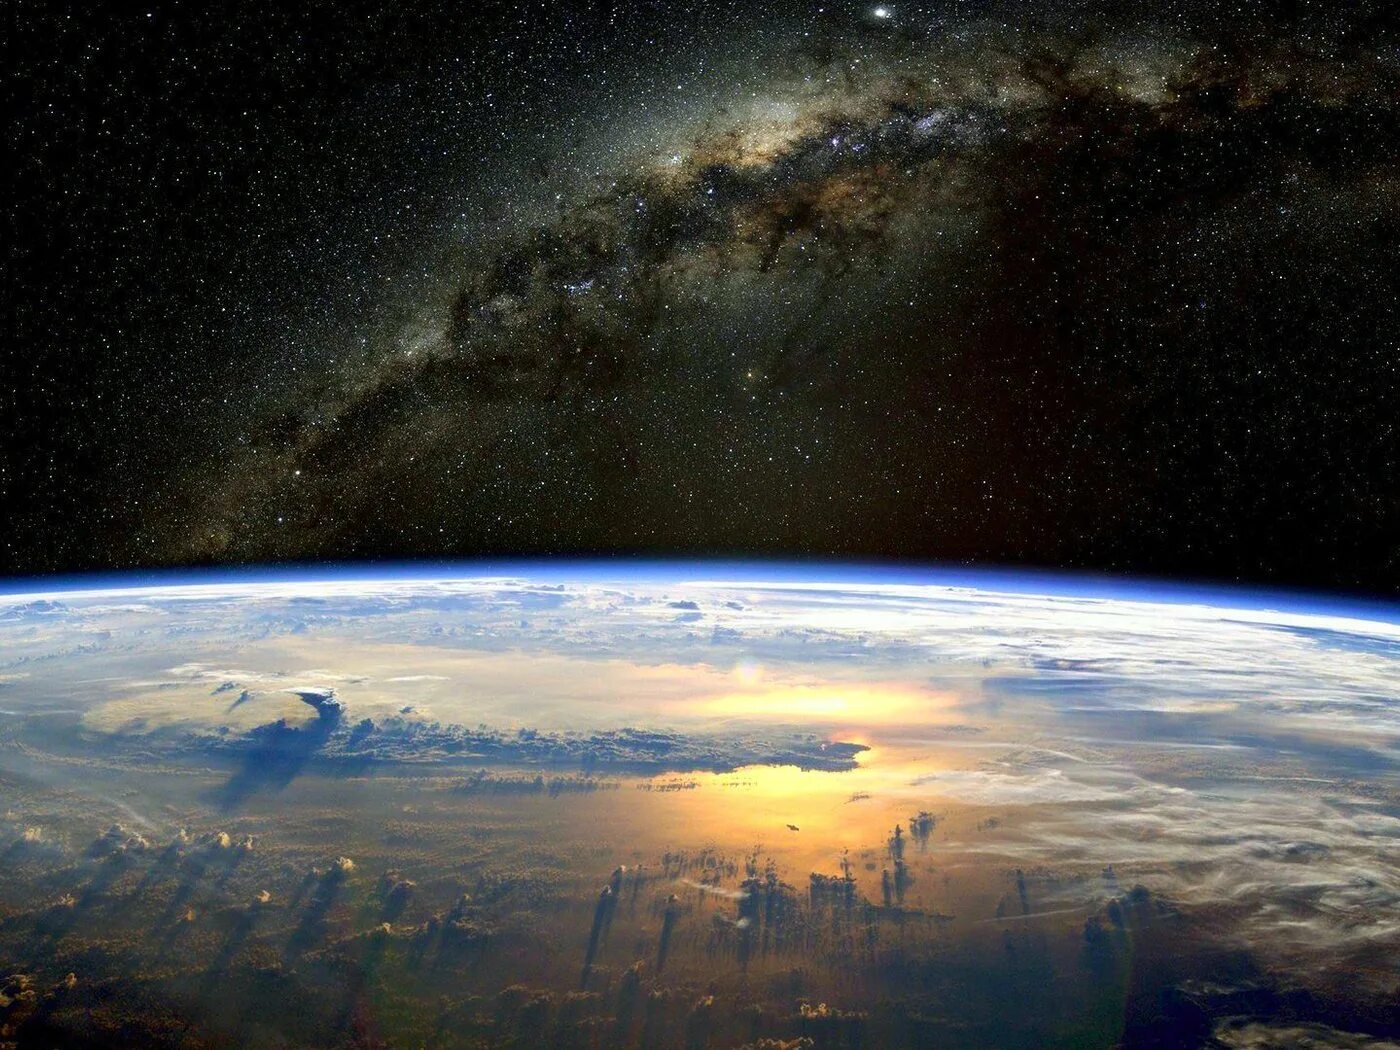 1 му земли. Космос Галактика Млечный путь планеты. Красивый вид земли из космоса. О земле и космосе. Планета из космоса.